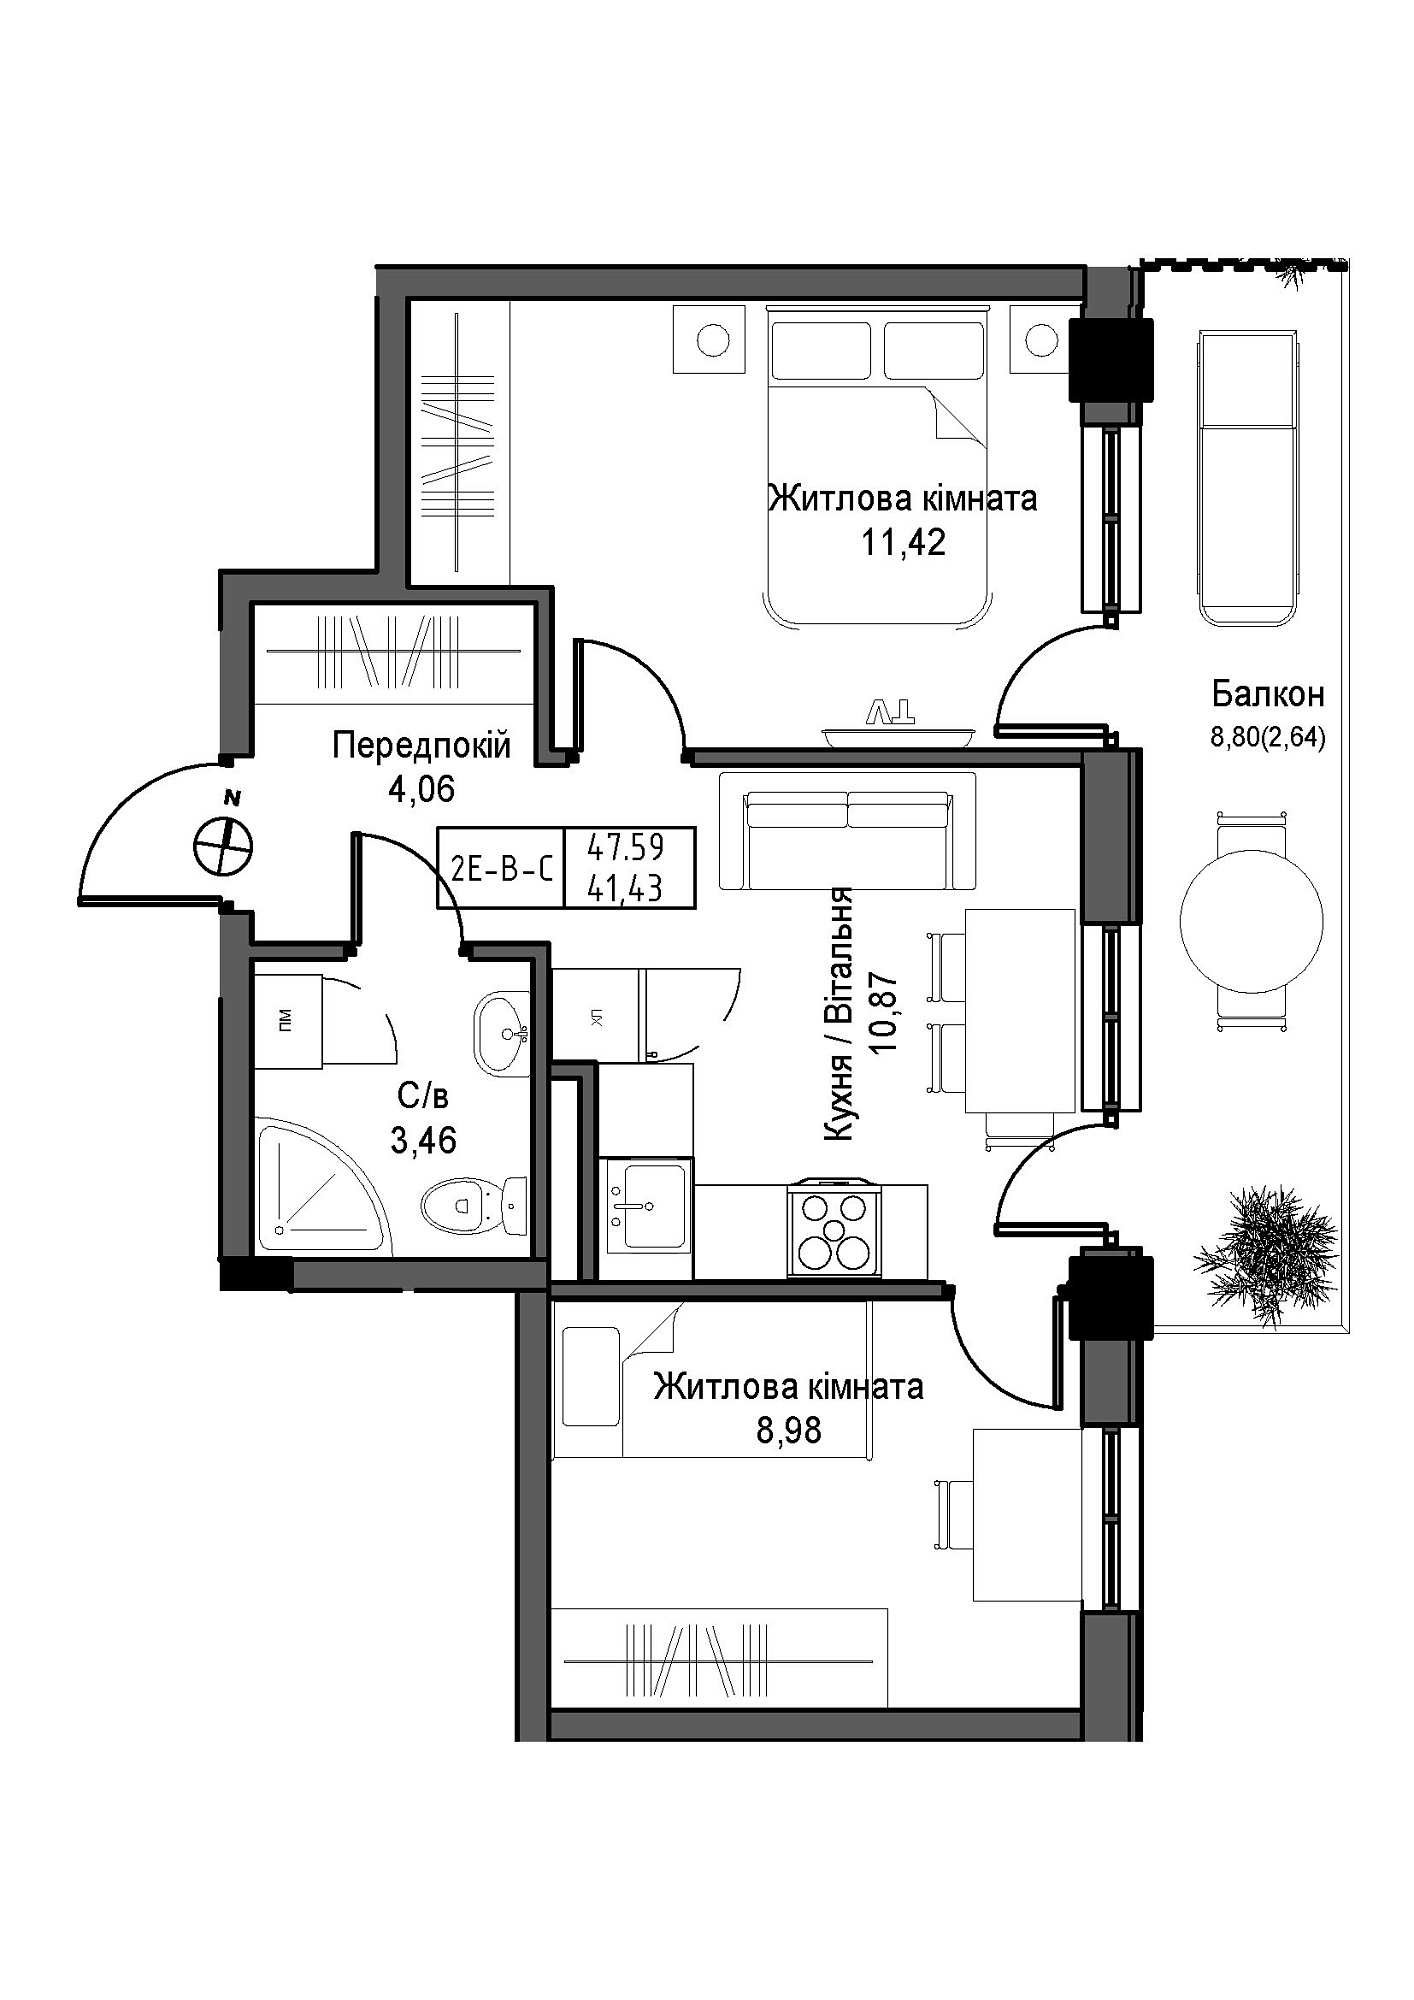 Планировка 2-к квартира площей 41.43м2, UM-007-11/0007.